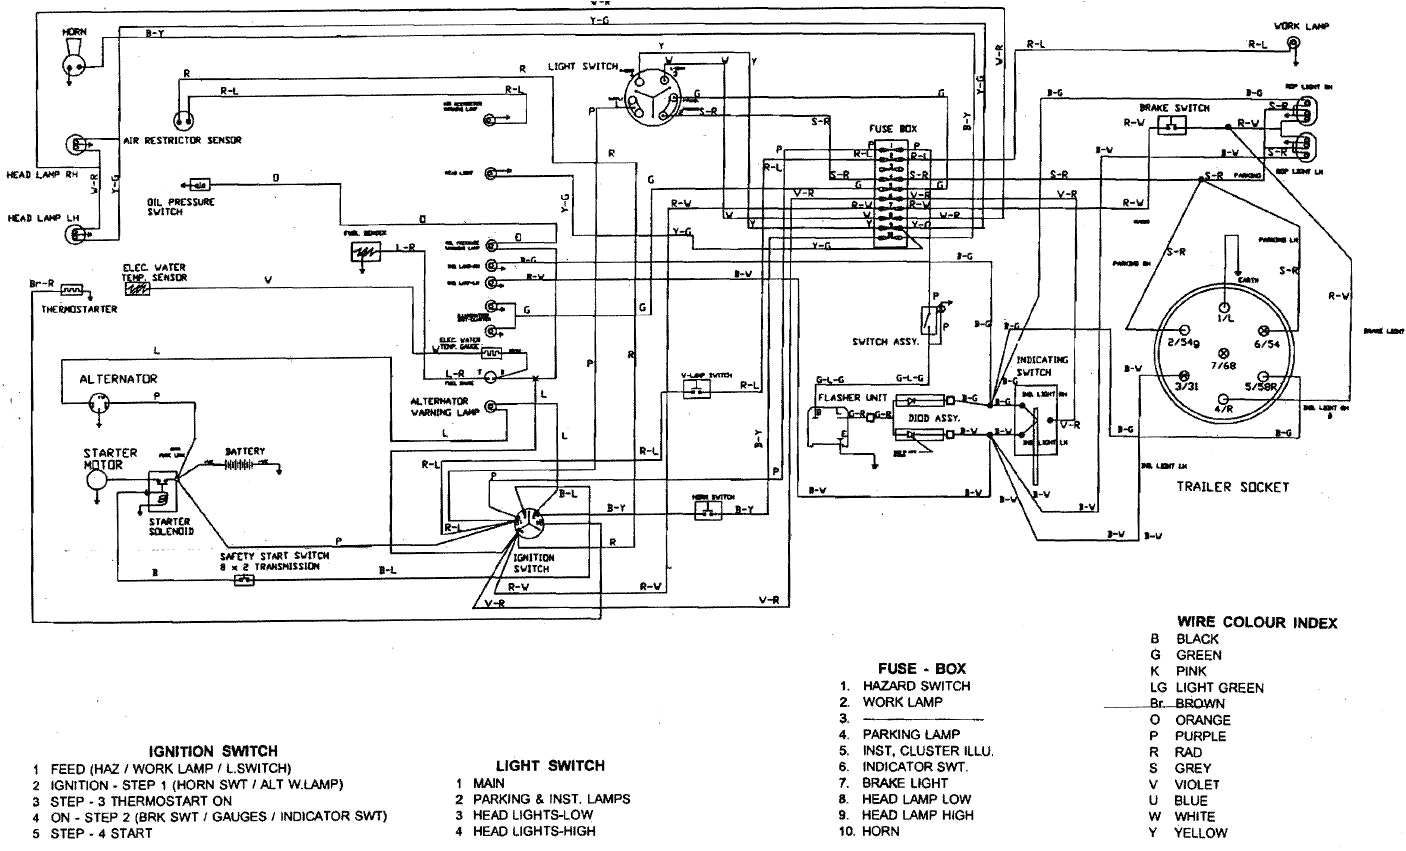 l111 wiring diagram database wiring diagram john deere a wiring diagram wiring diagram l111 wiring diagram